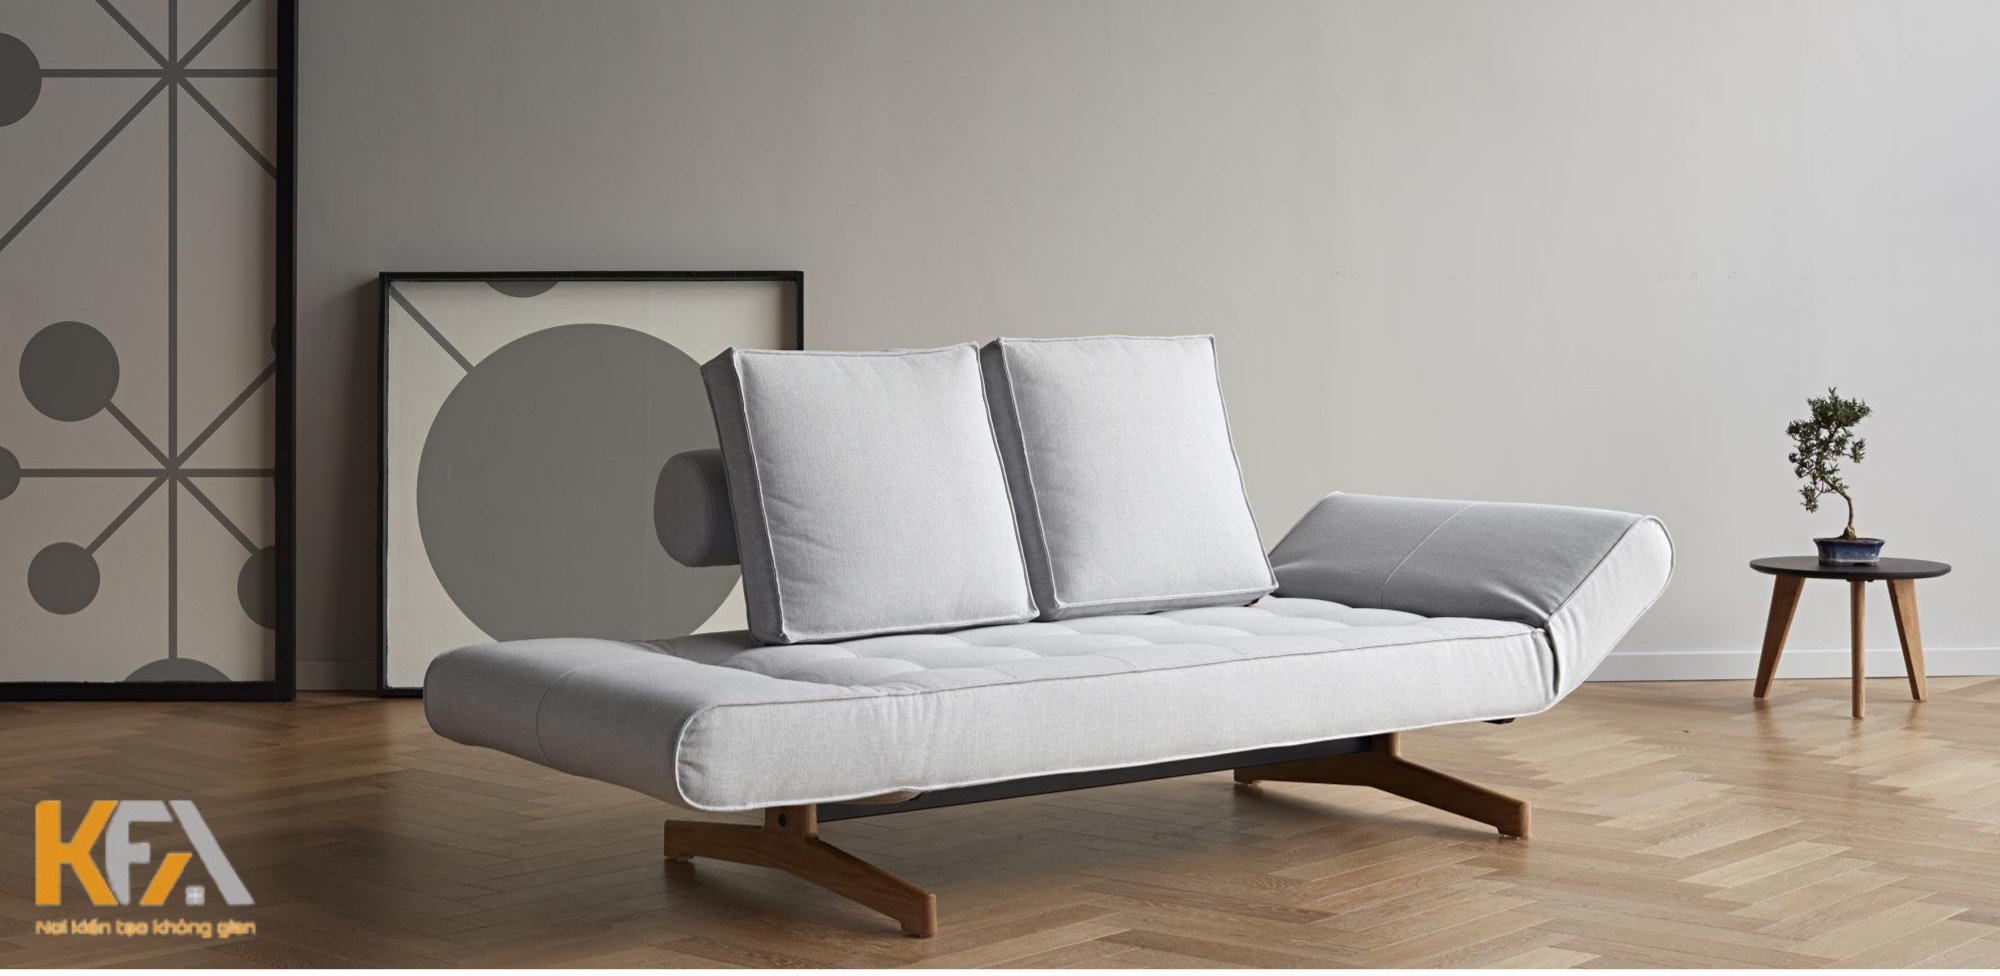 Ghế sofa giường bằng vải tinh tế nhỏ gọn 